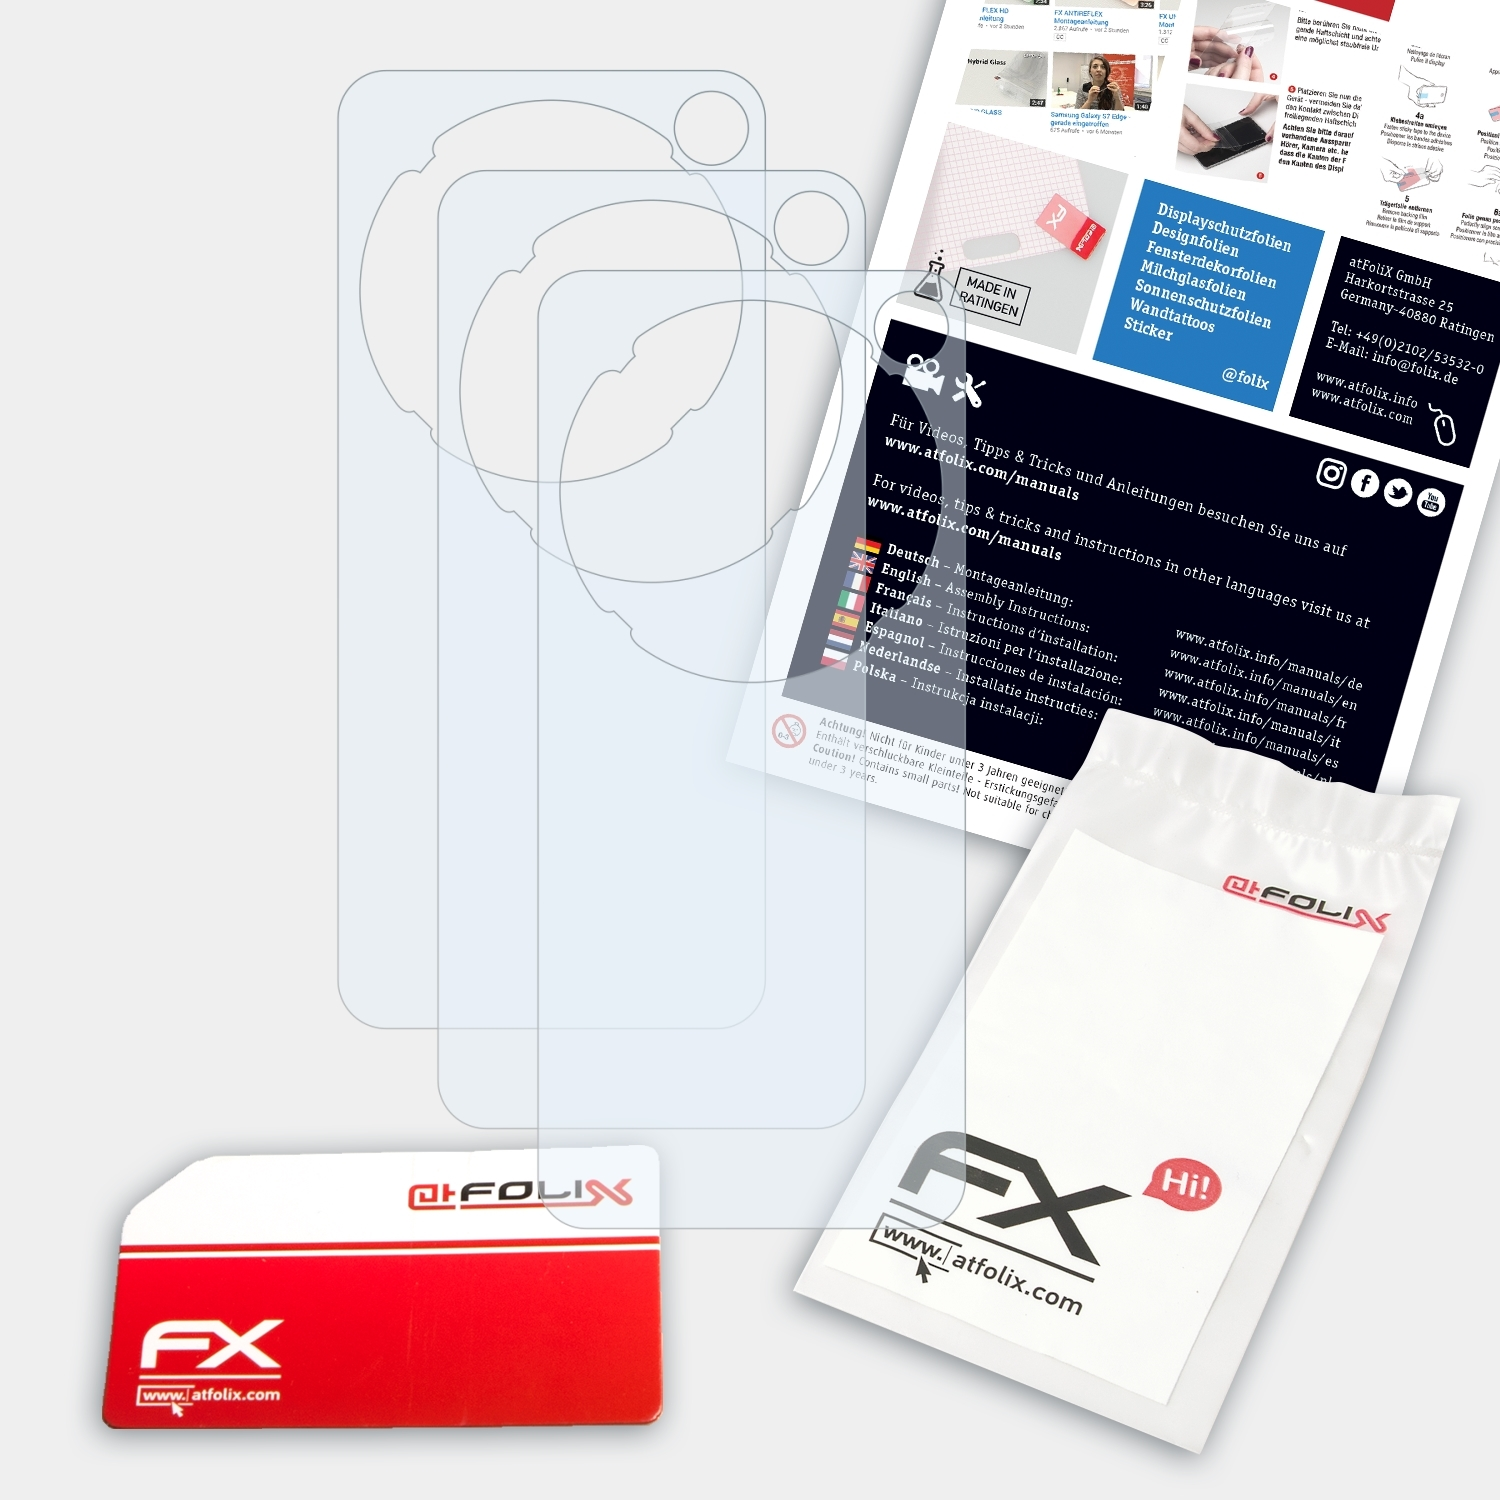 ATFOLIX 3x FX-Clear Displayschutz(für e280) Sansa Sandisk